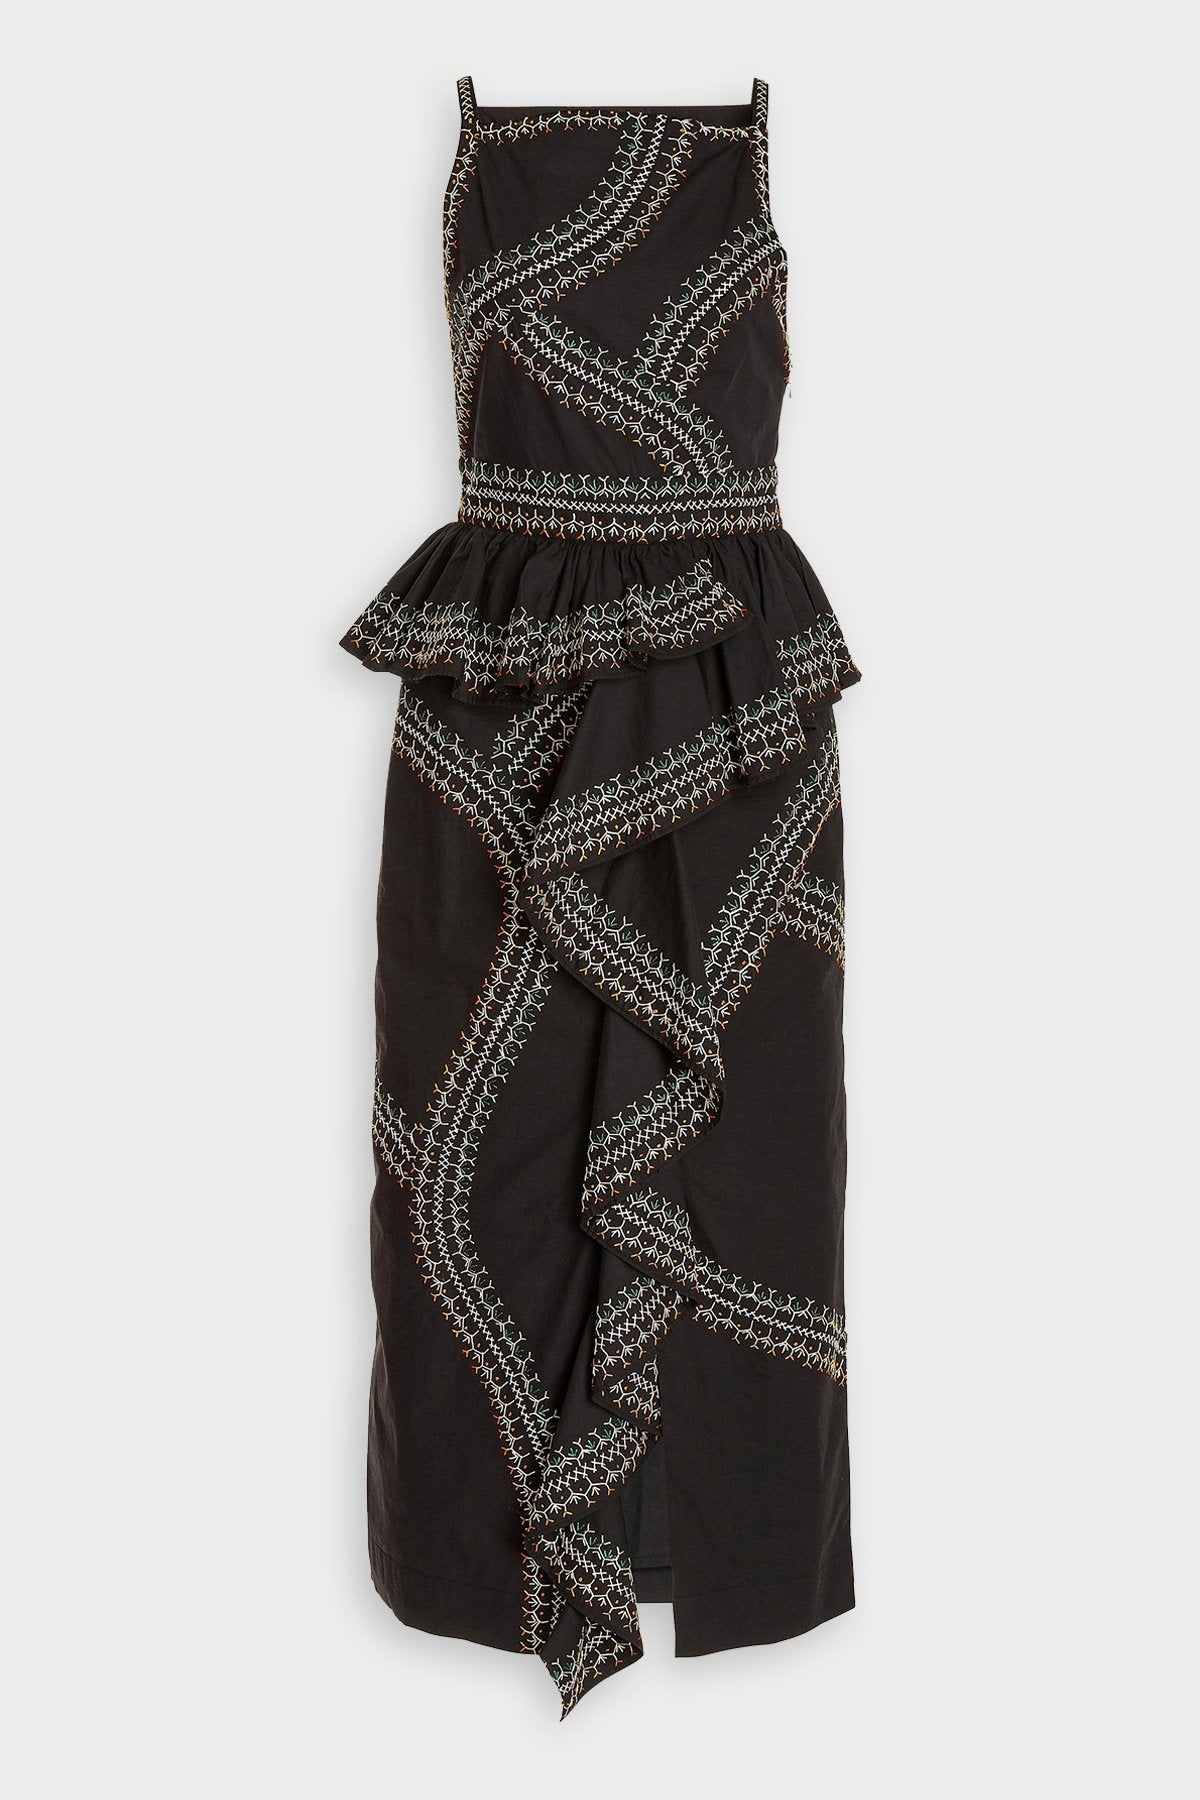 Sylvan Dress in Noir - shop-olivia.com